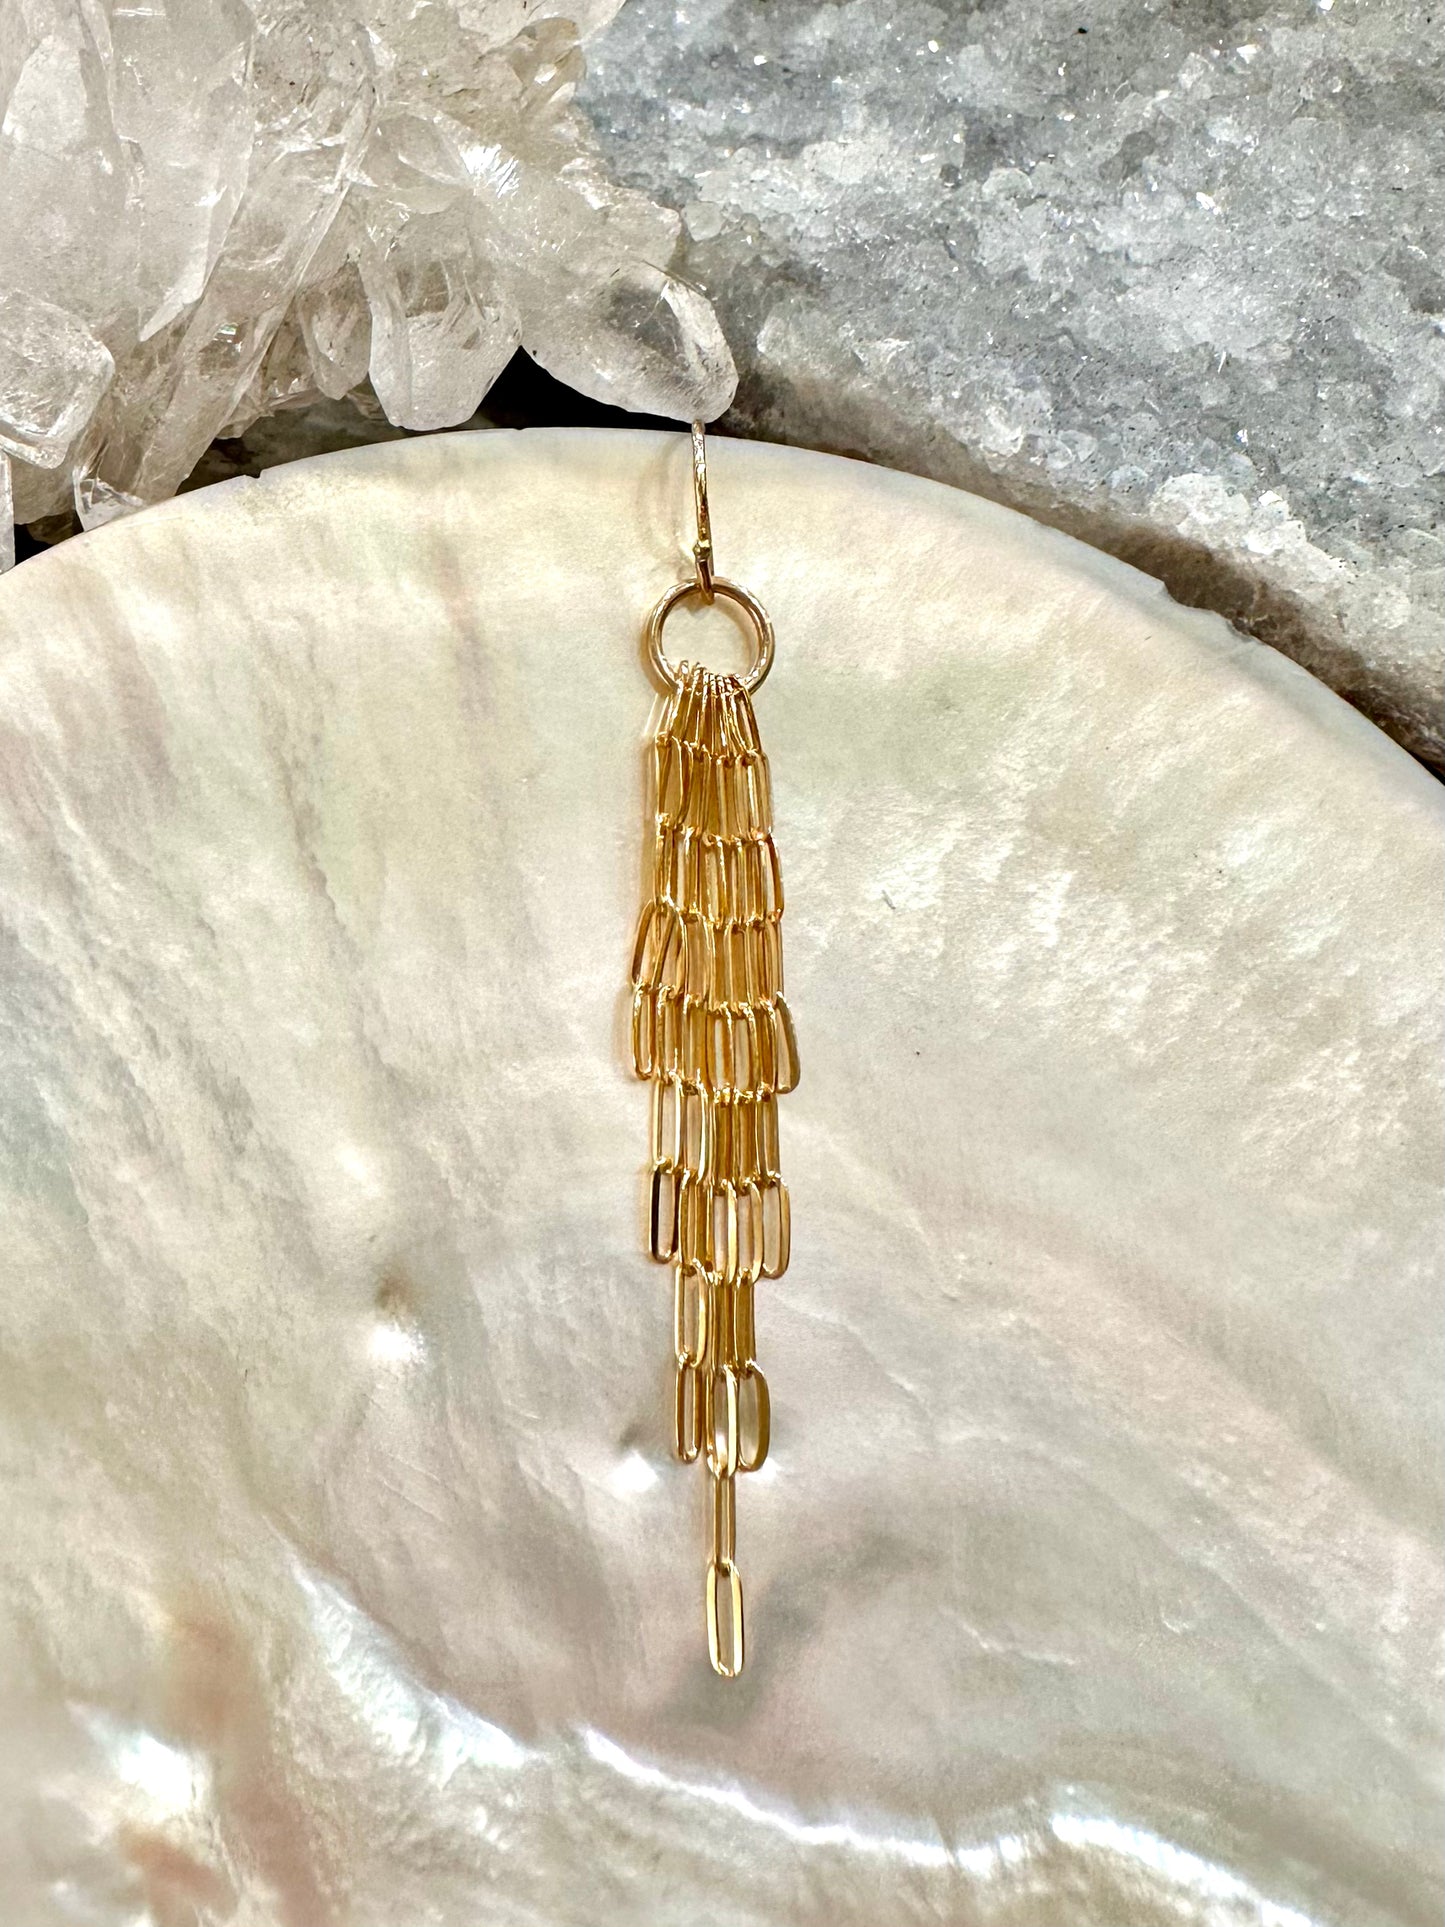 Adrianne drop earrings, chain link earrings, large earrings in gold